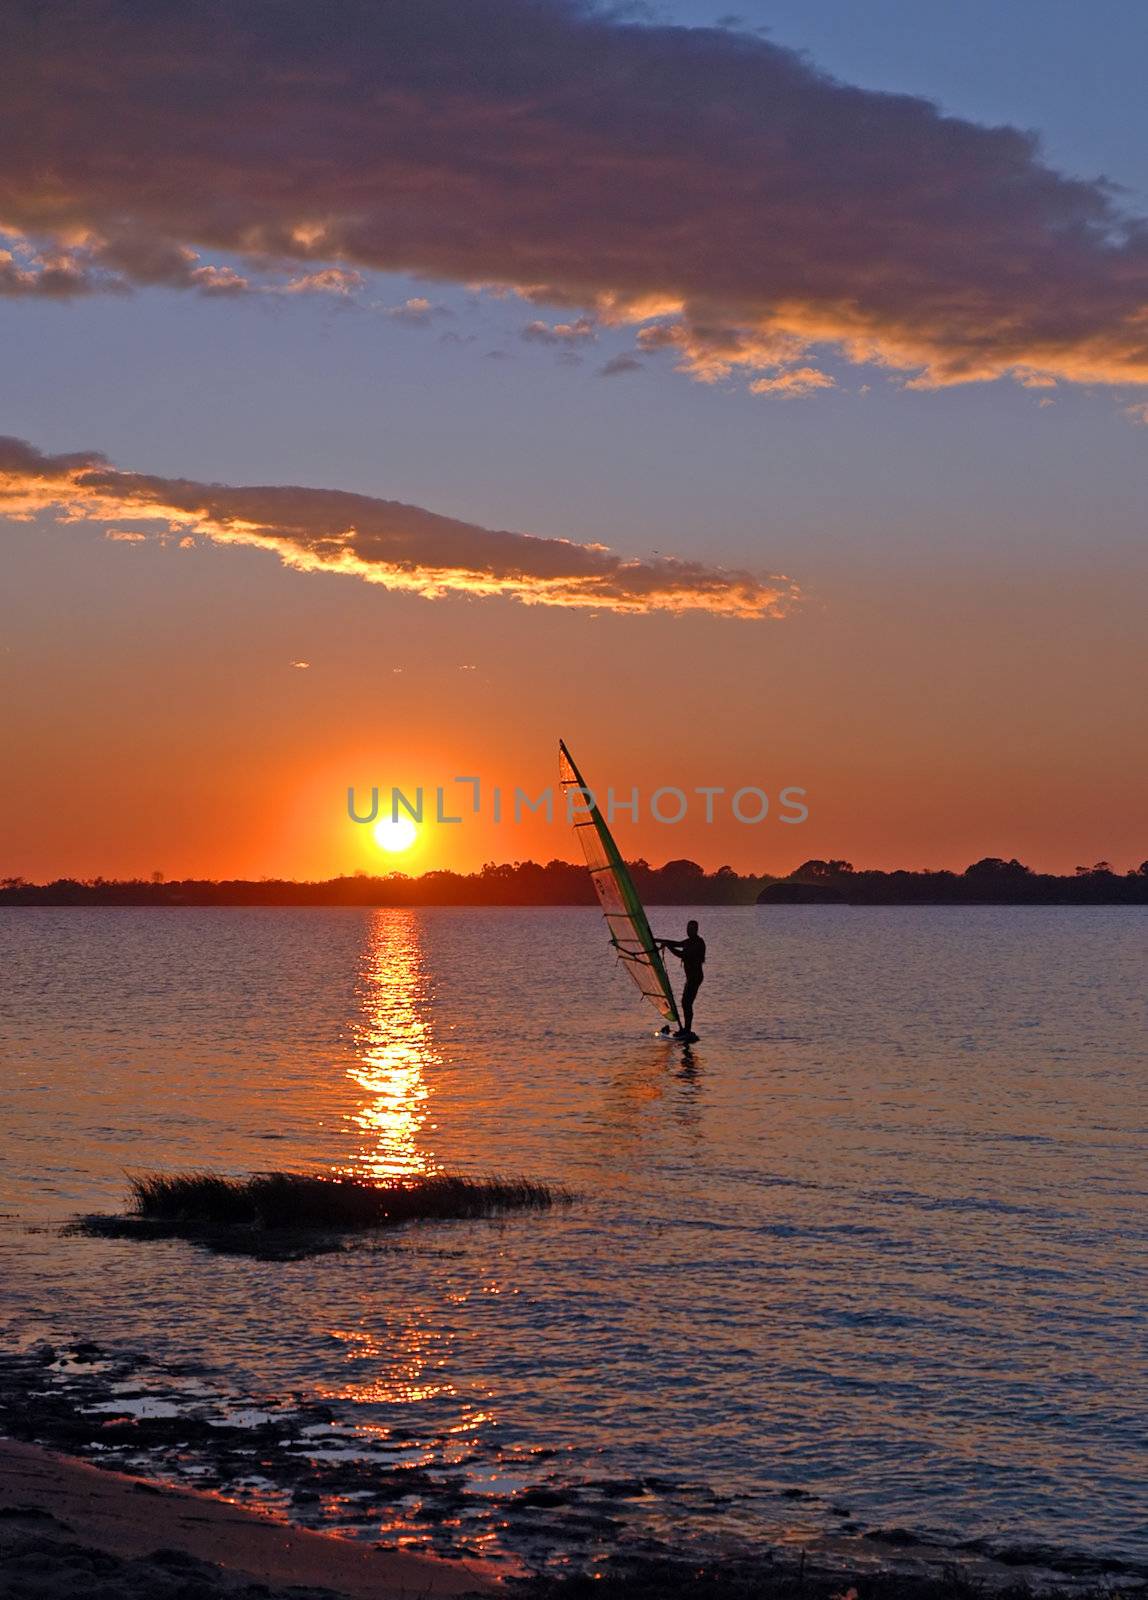  windsurfer speeding fast against the sunset